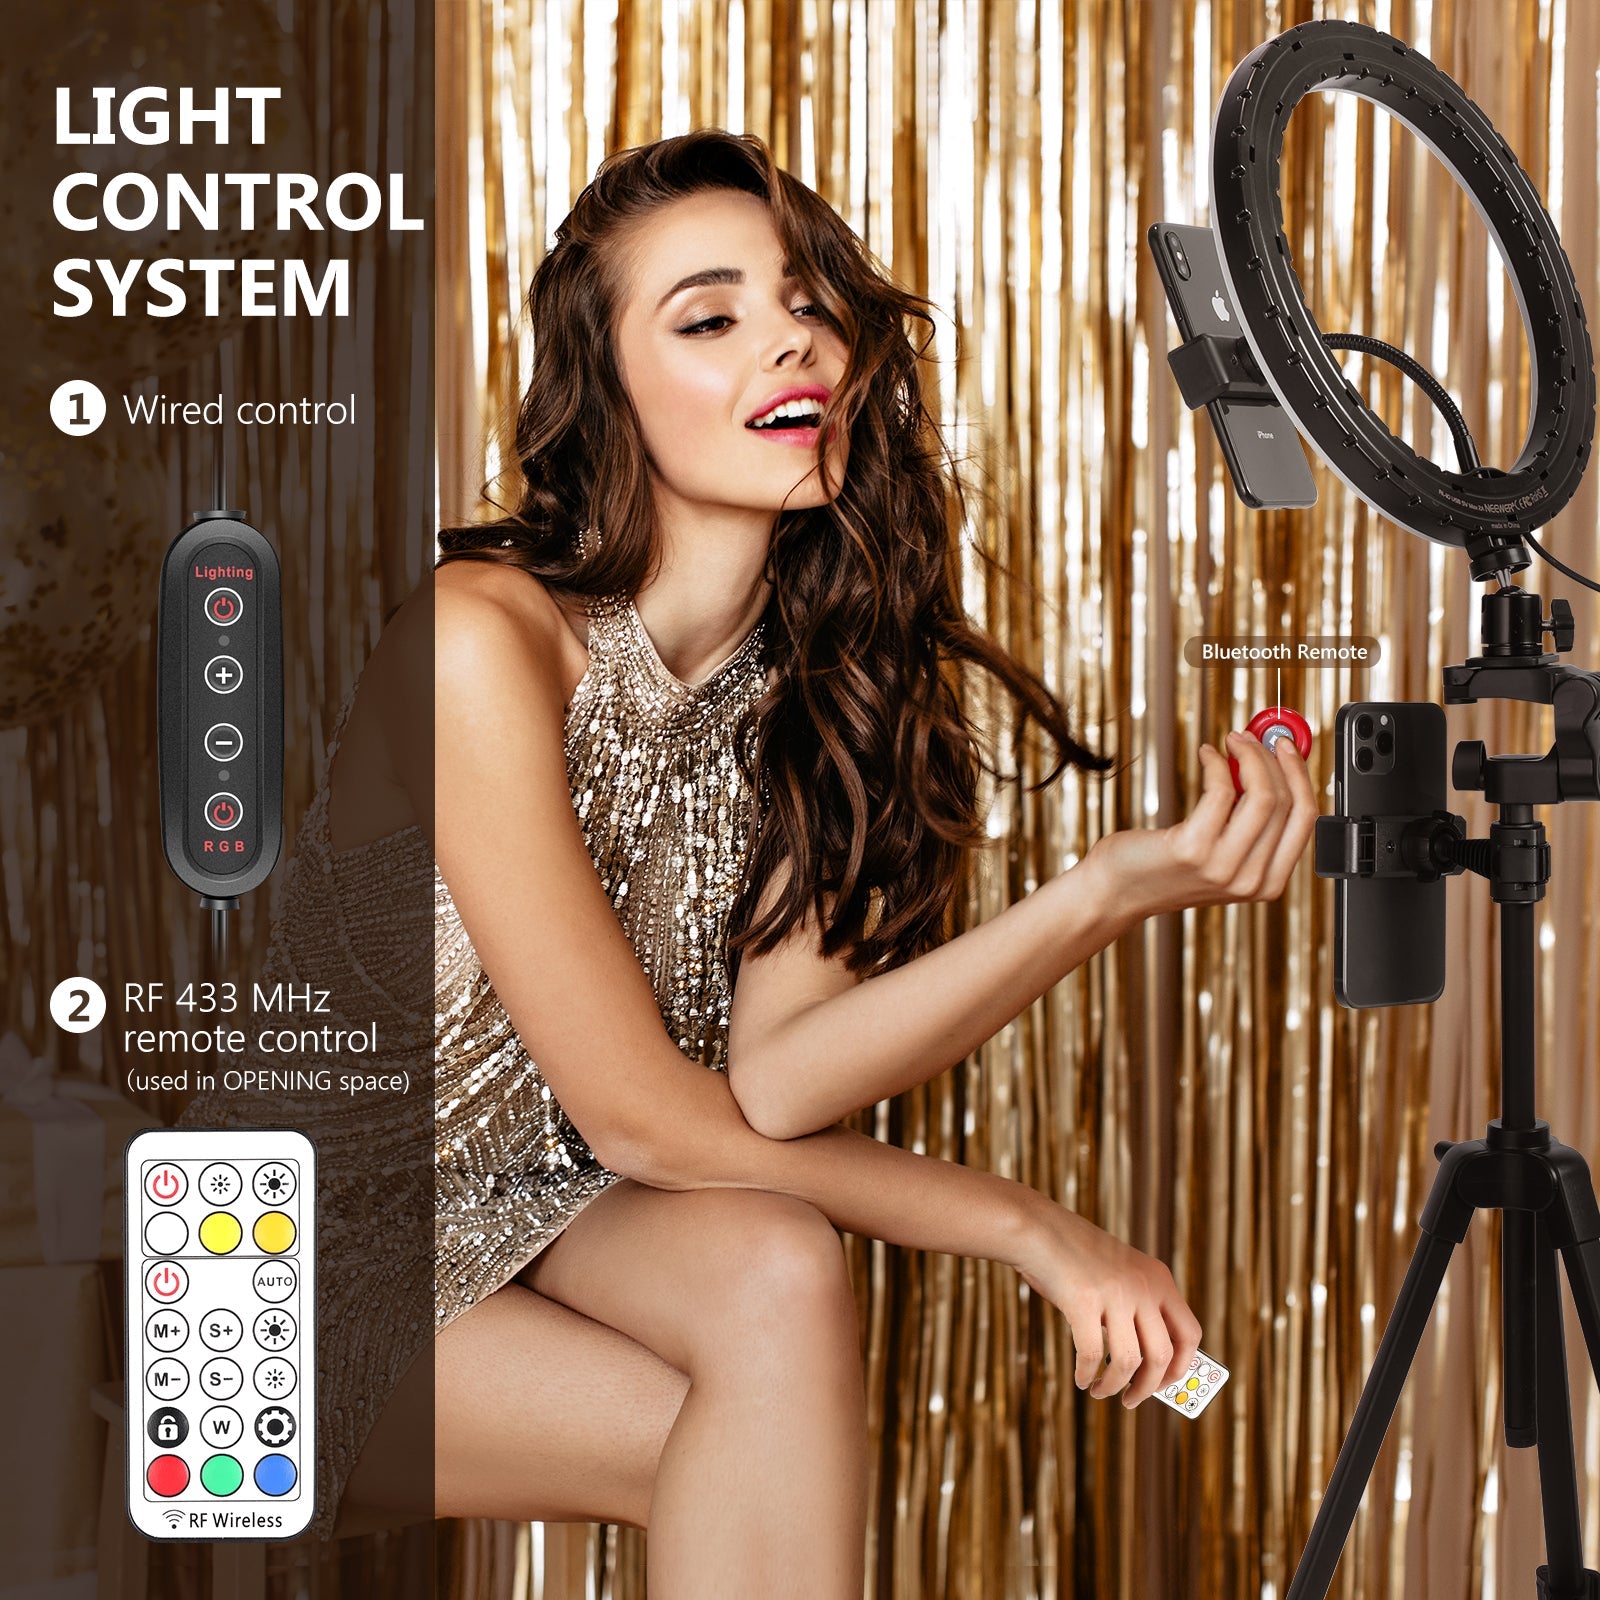 Neewer Ring Light Selfie LED pour Téléphone - Mini Lumière Anneau